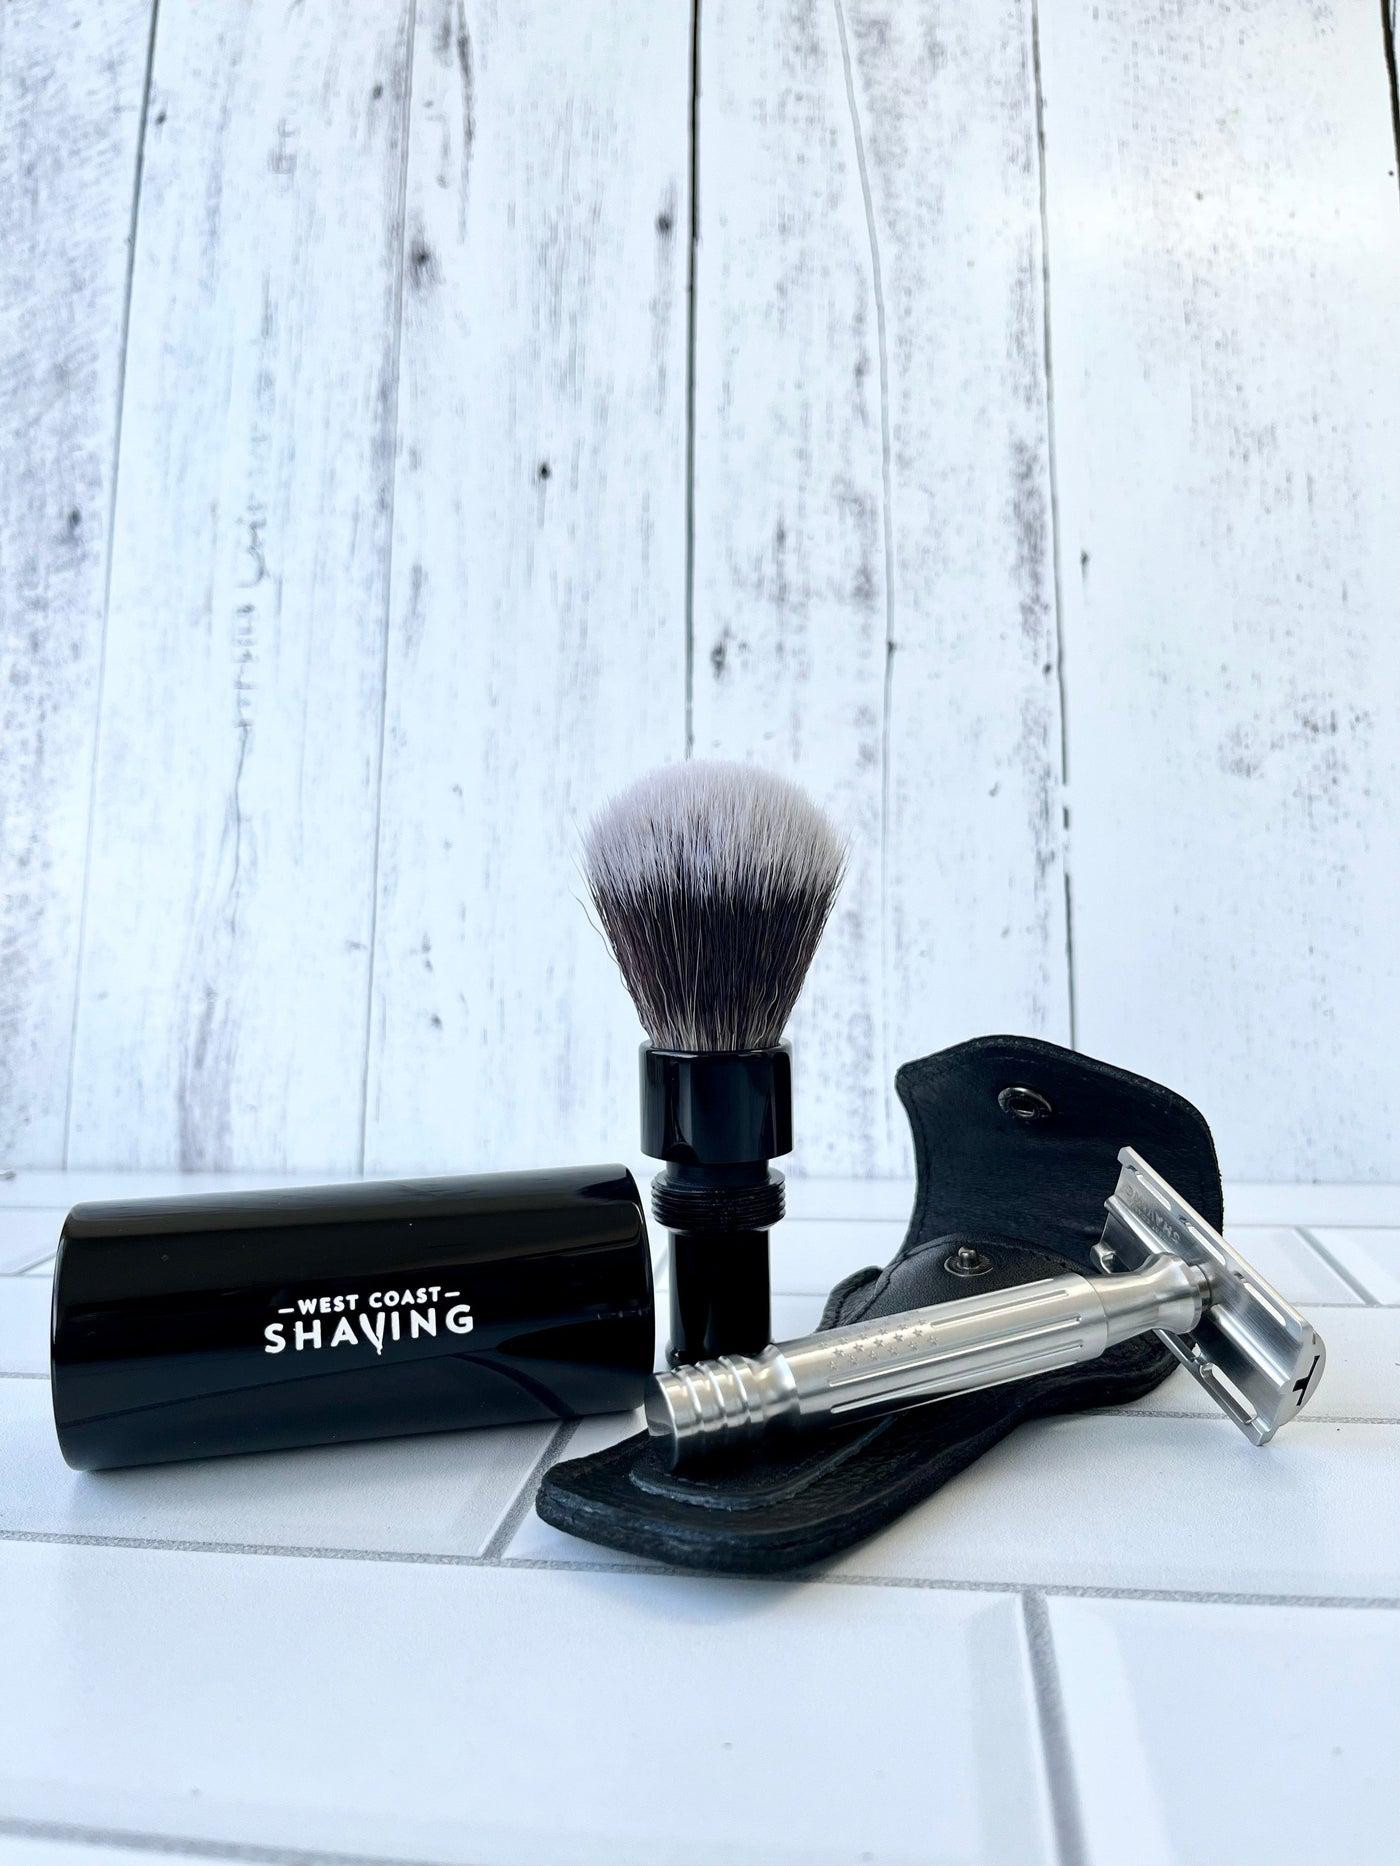 Product image 3 for West Coast Shaving Traditional Travel Shaving Brush